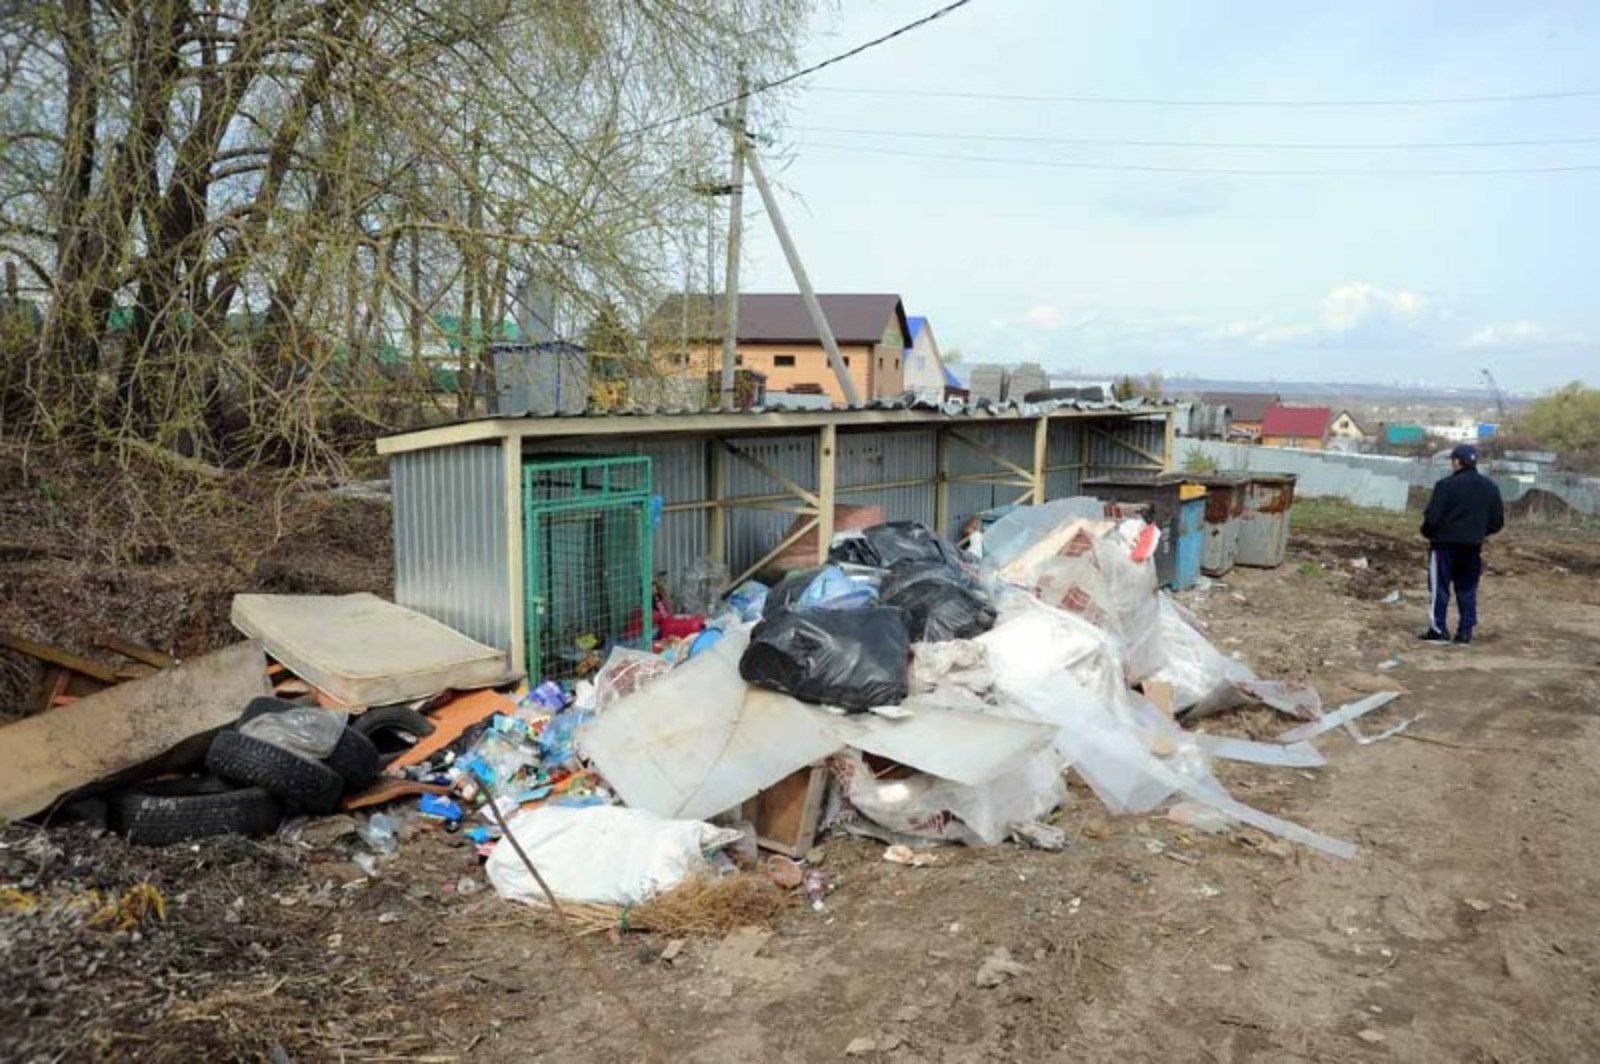 Ринат РАЗАПОВ  Жители Зинино устраивают мусорные свалки на контейнерных площадках.